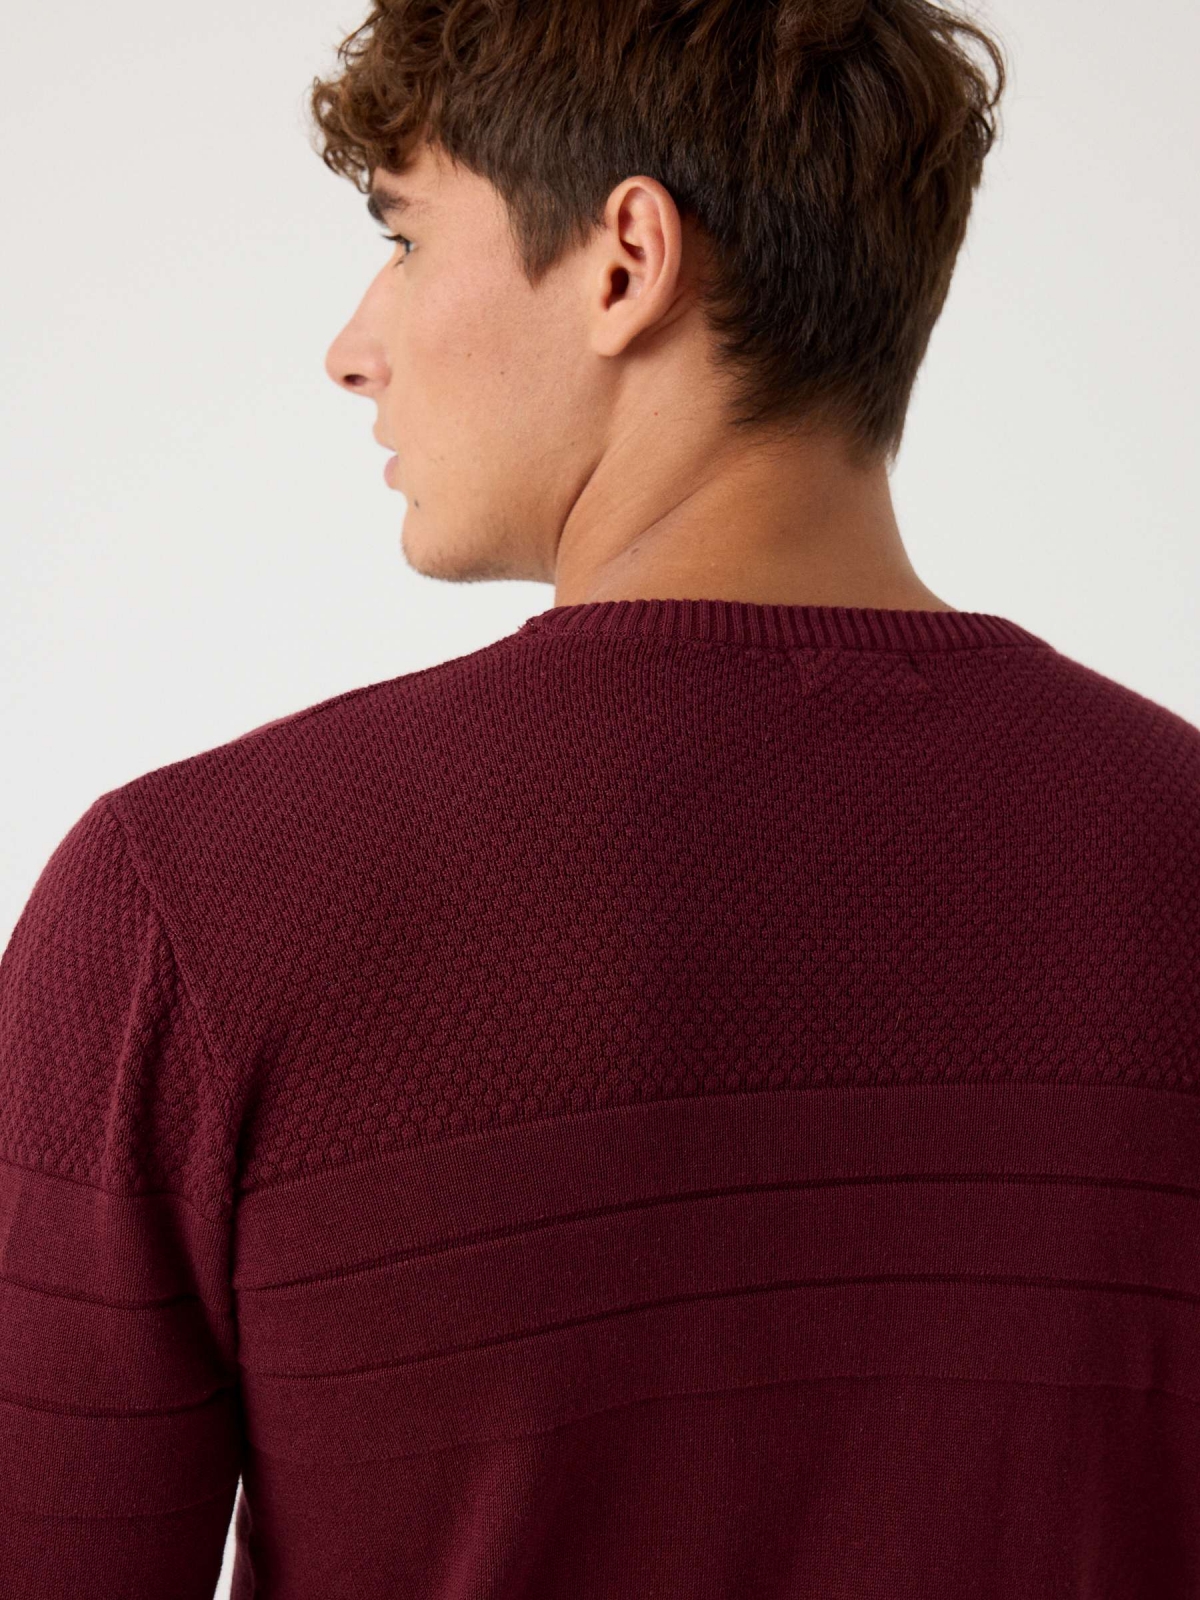 Suéter básico de textura com listras granada vista detalhe